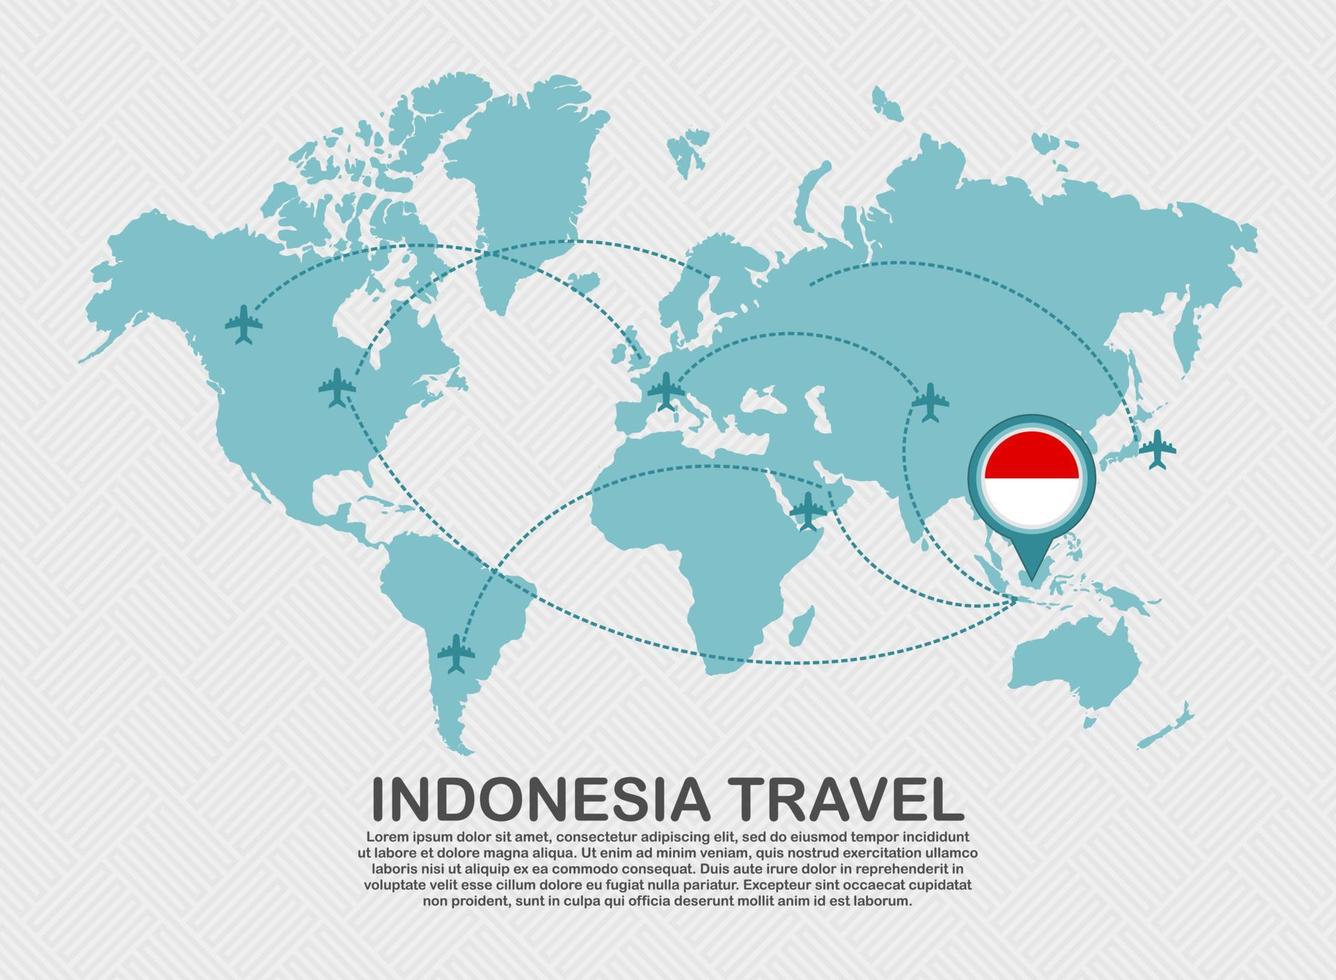 viajar para o cartaz da indonésia com mapa do mundo e conceito de destino de turismo de fundo de negócios de rota de avião voador vetor